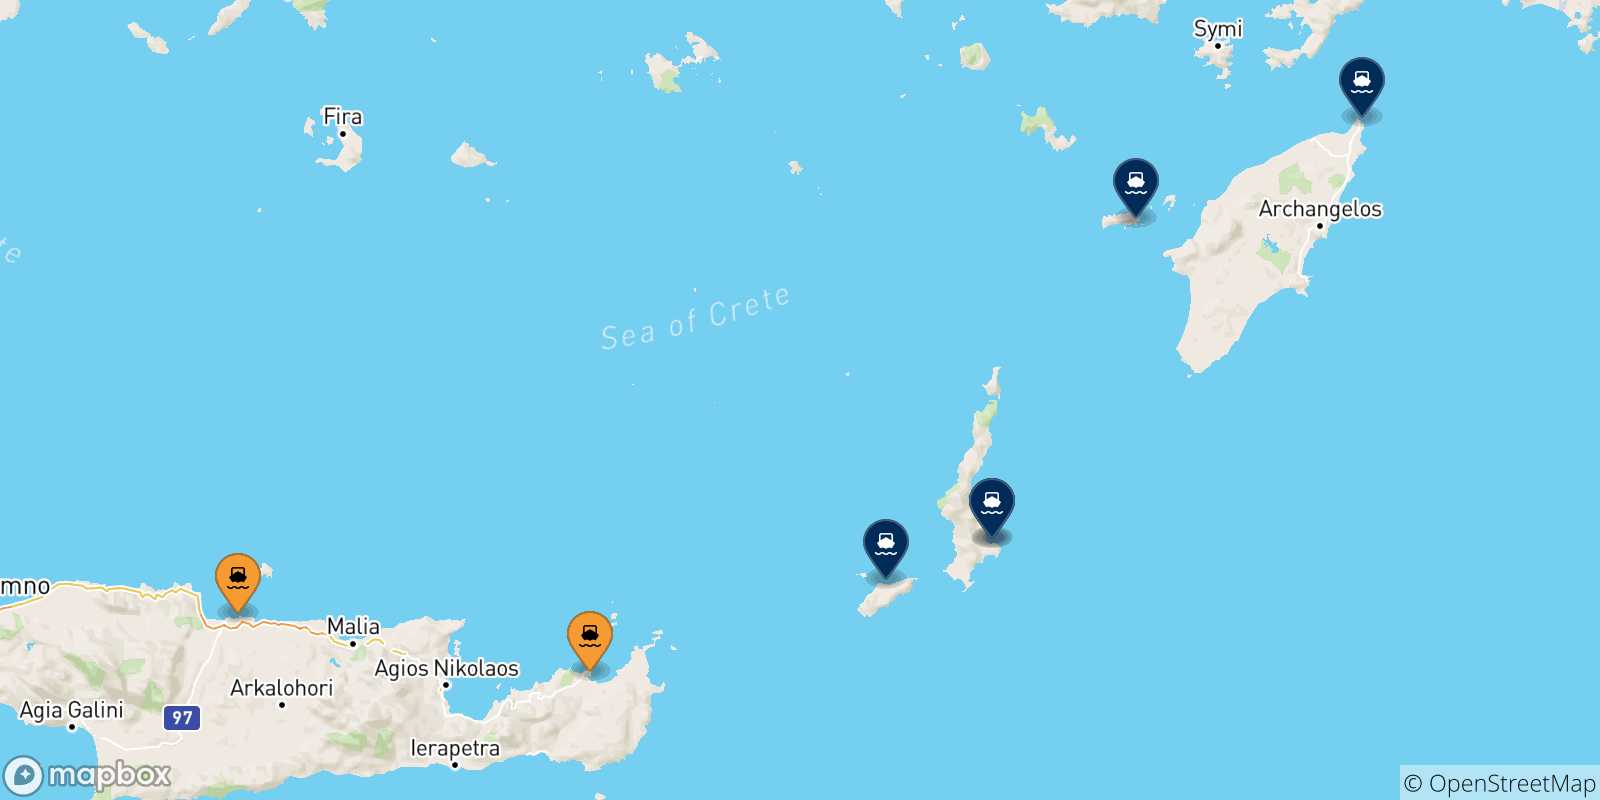 Mappa delle possibili rotte tra Creta e le Isole Dodecaneso